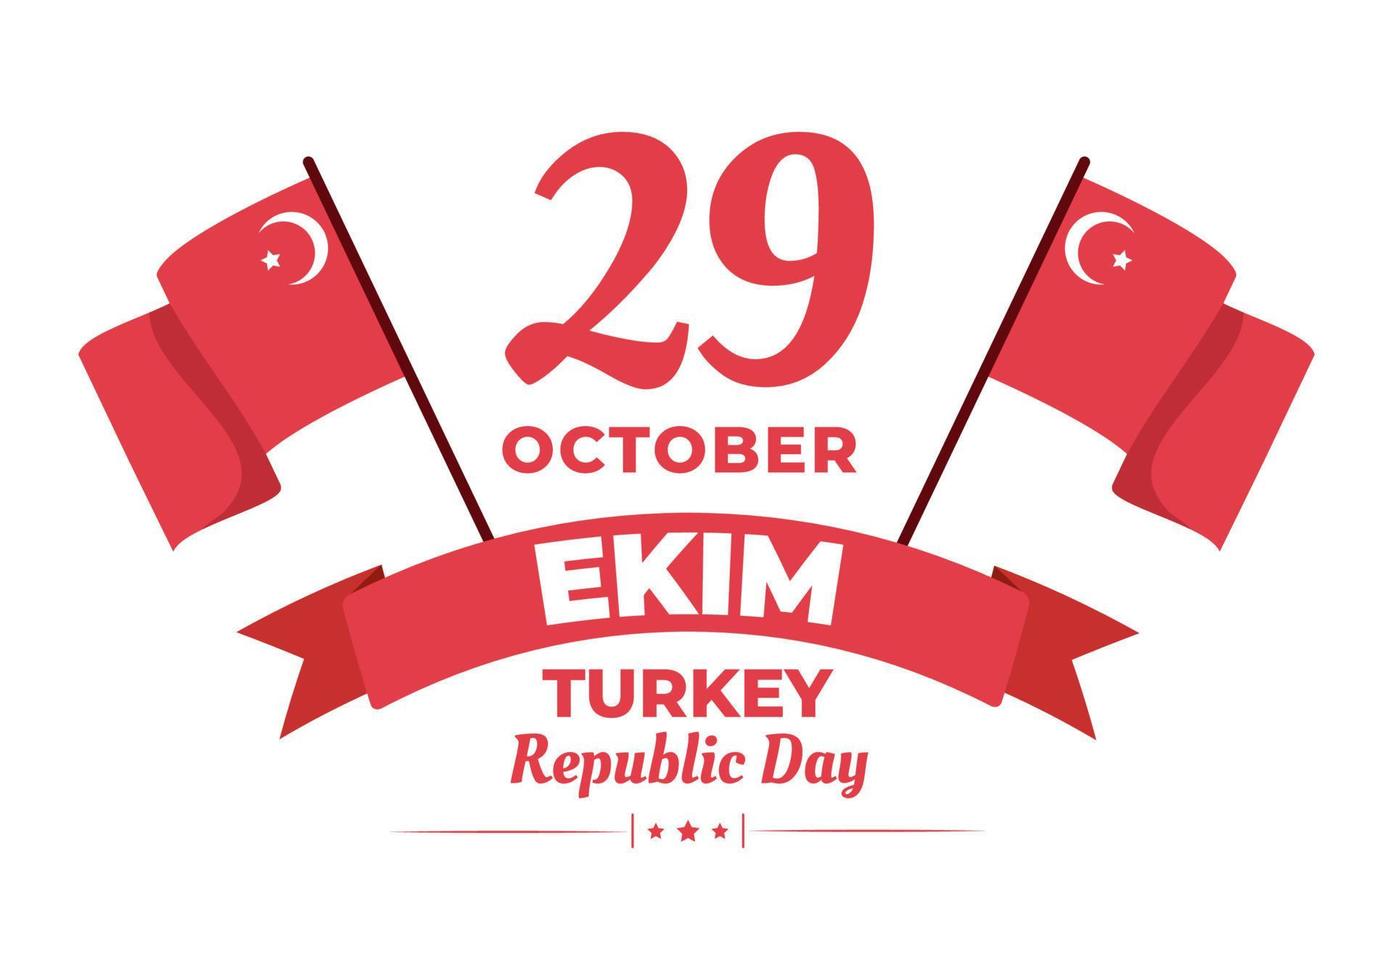 dia da república turquia ou 29 ekim cumhuriyet bayrami kutlu olsun ilustração plana de desenhos animados desenhados à mão com bandeira do design turco e feliz feriado vetor